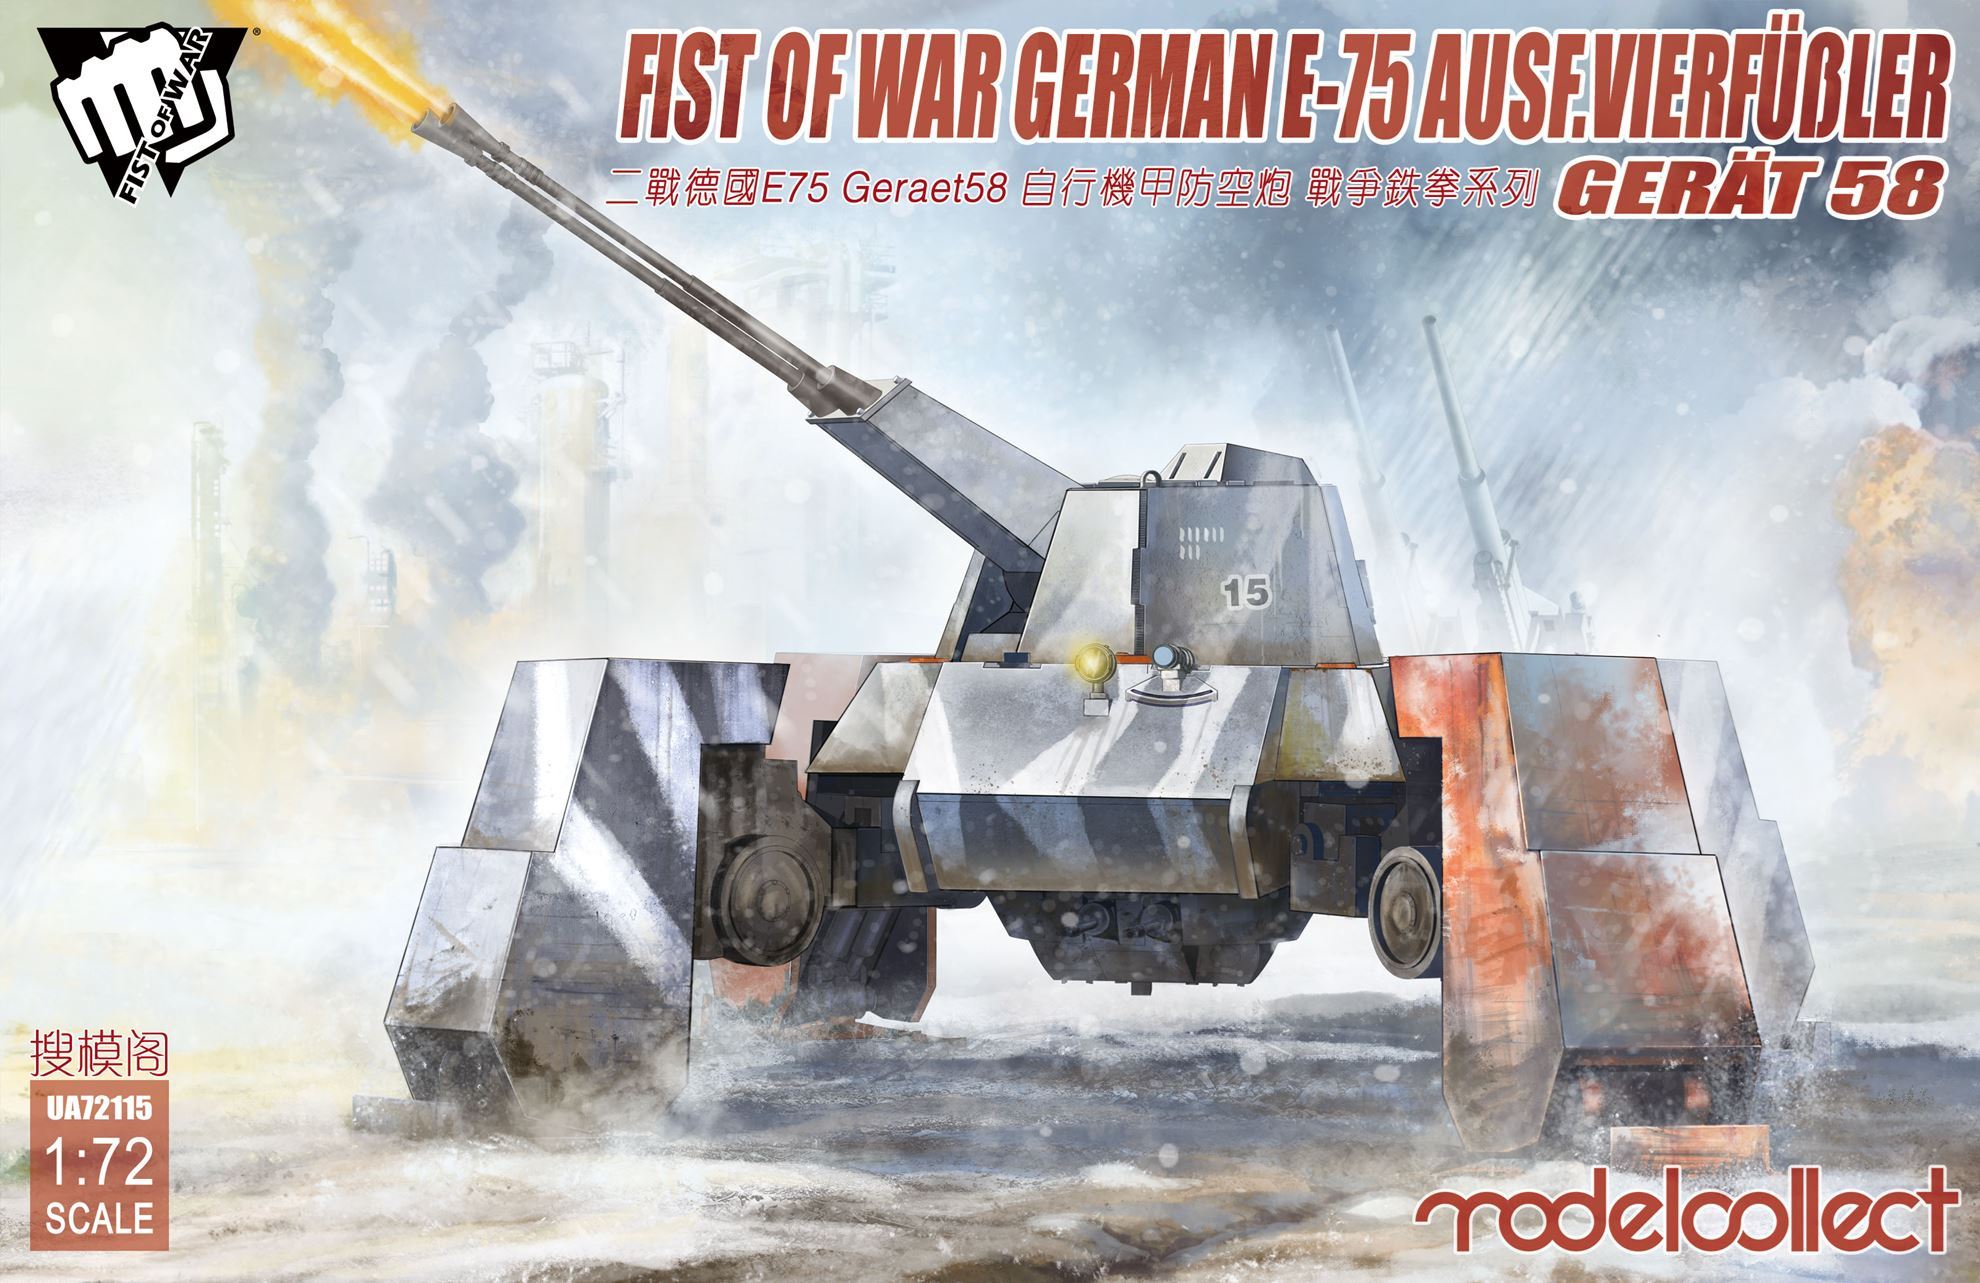 Fist of War - German E75 Ausf.vierfubler Gerat 58